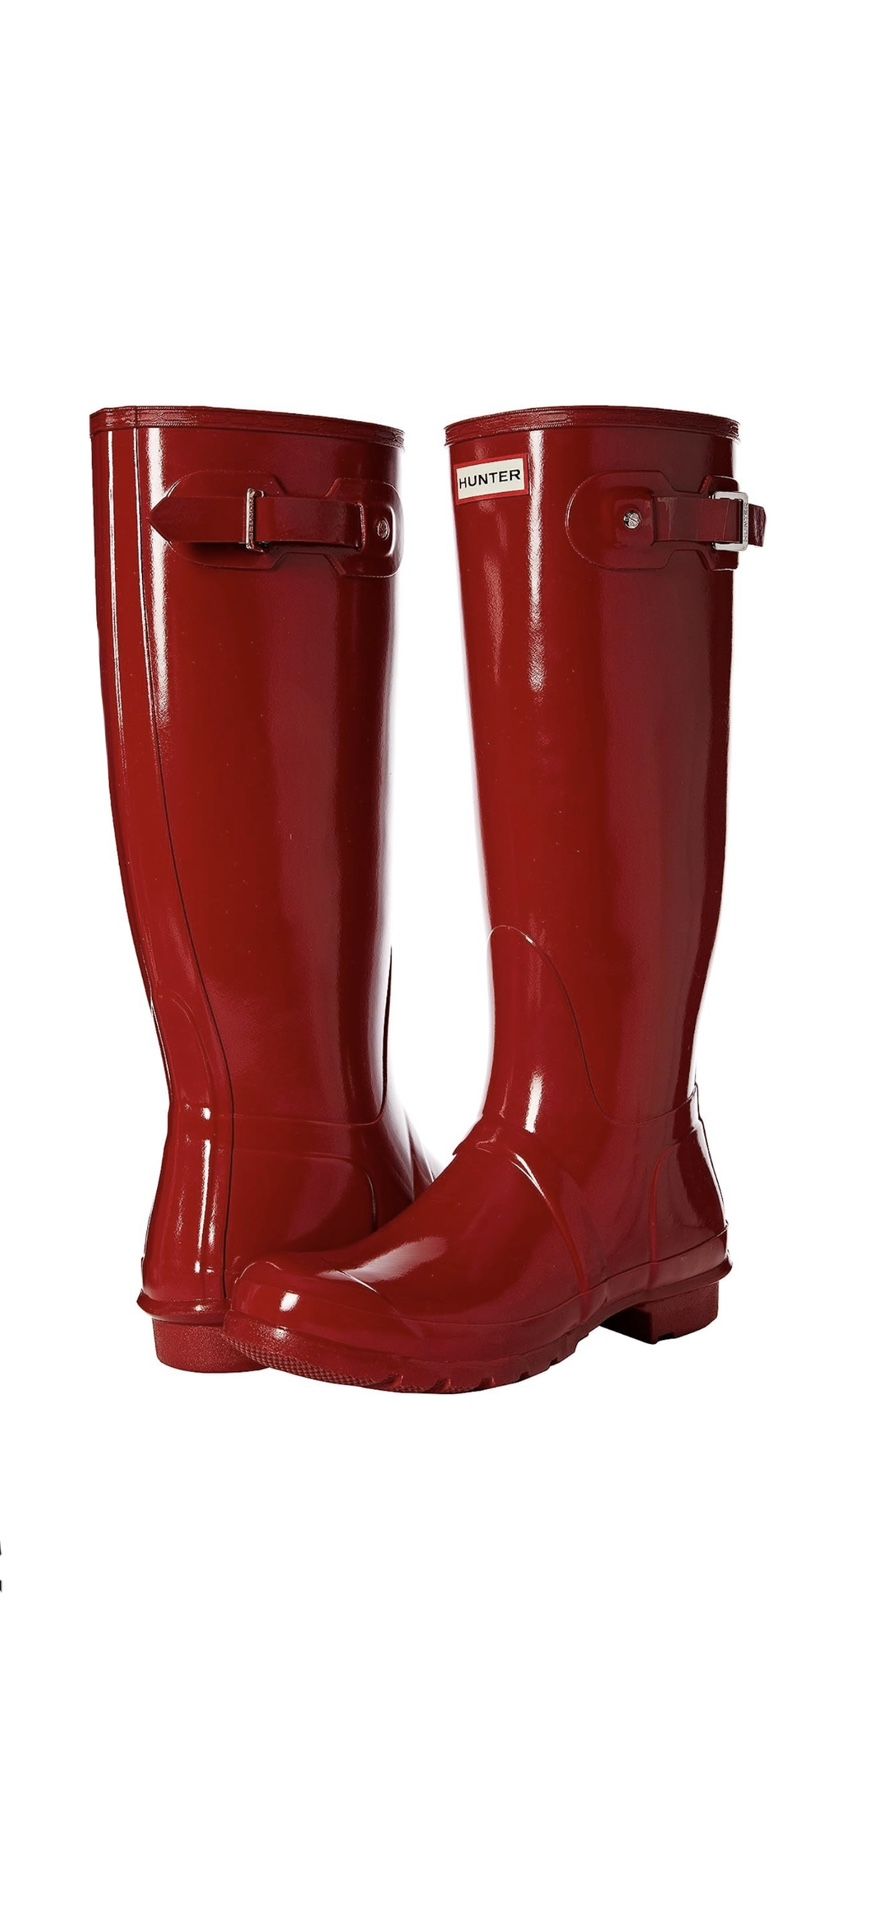 Women’s Original Tall Gloss Rain Boots